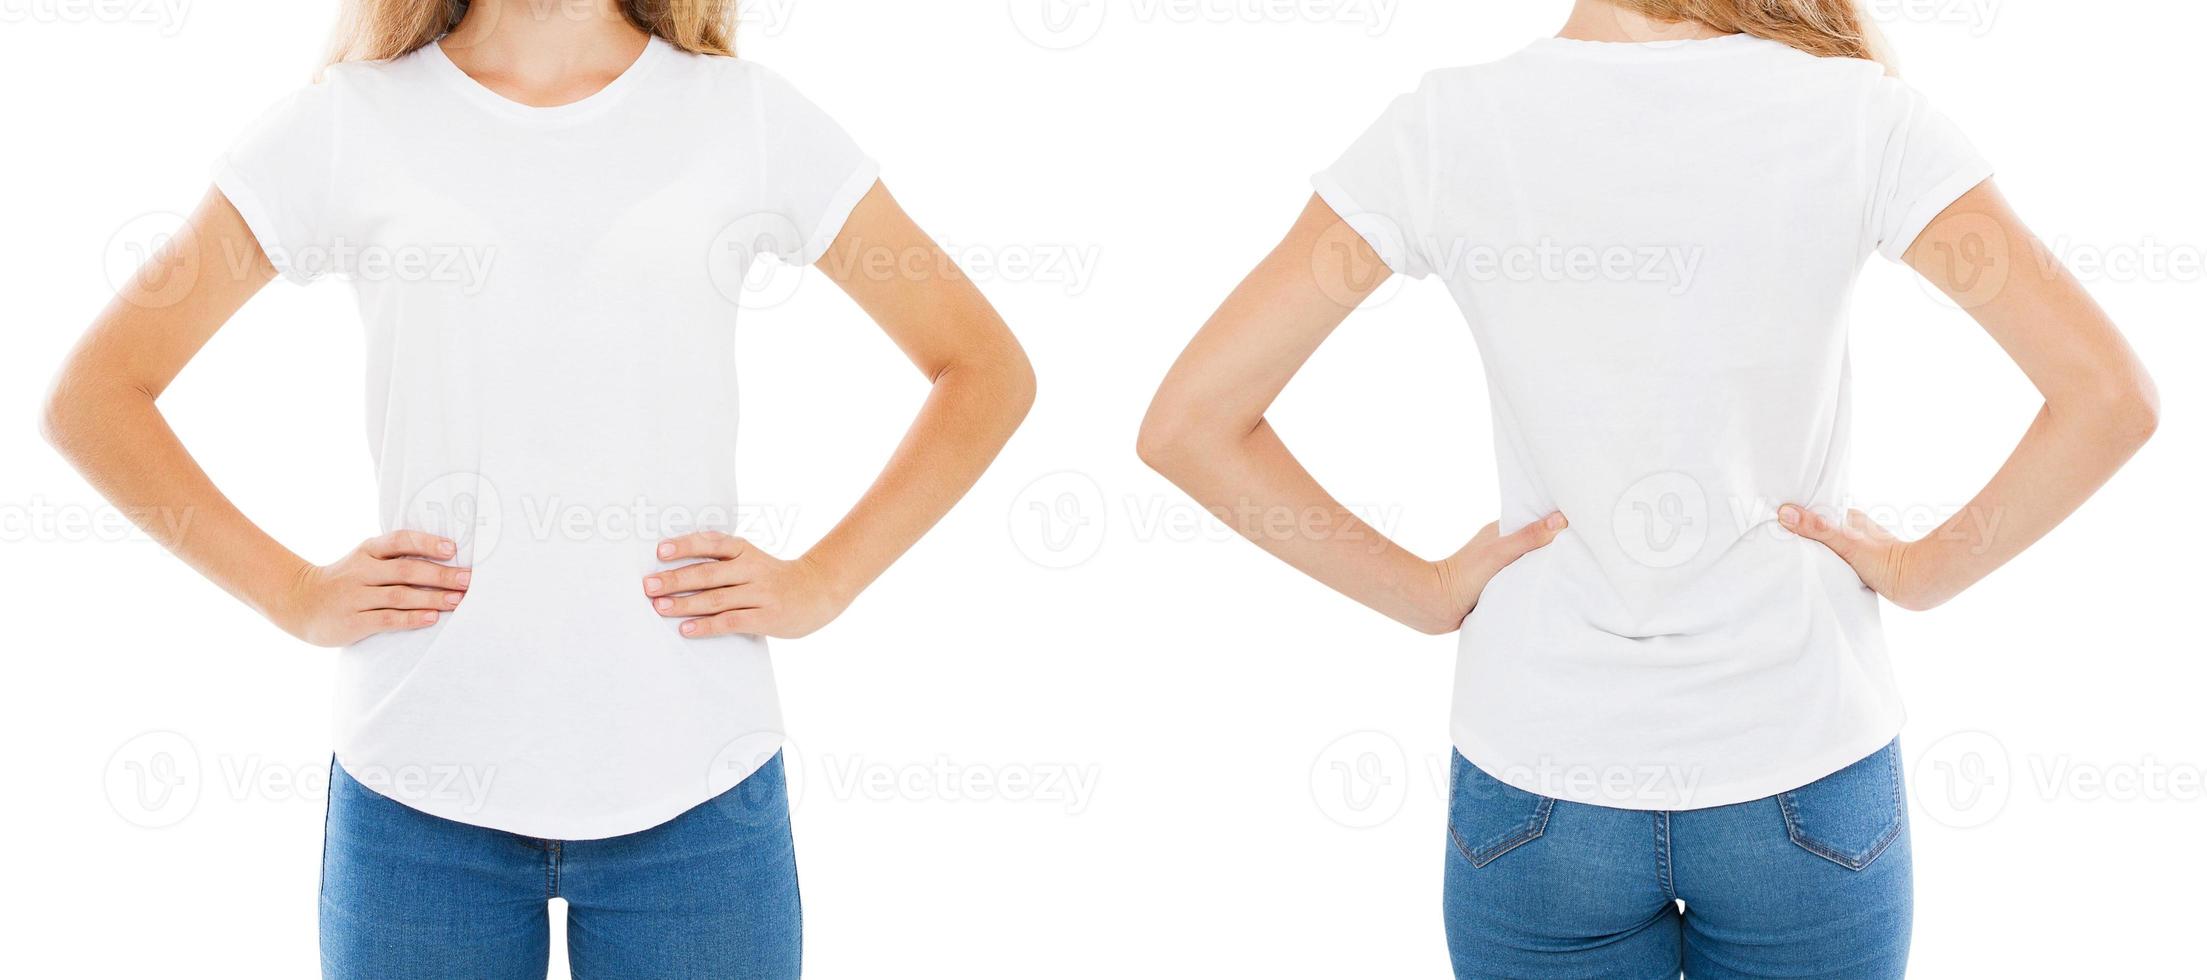 design de t-shirt et concept de personnes - gros plan d'une jeune femme en t-shirt blanc vierge, chemise avant et arrière isolées. maquette. photo